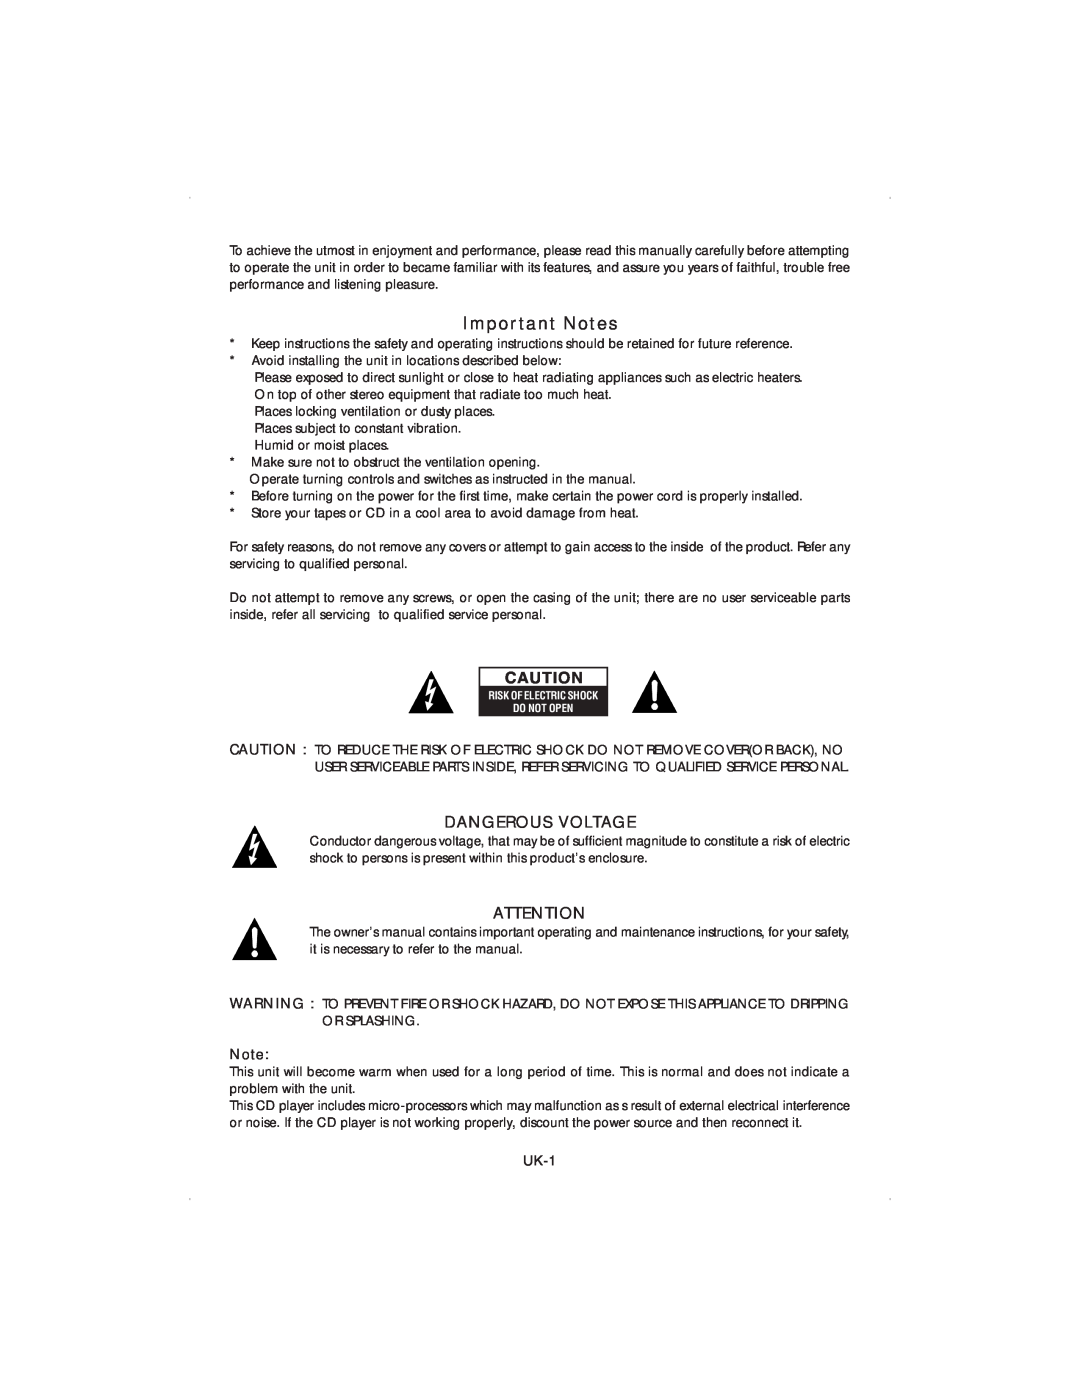 Jwin JX-CD4000 manual Dangerous Voltage, Important Notes 